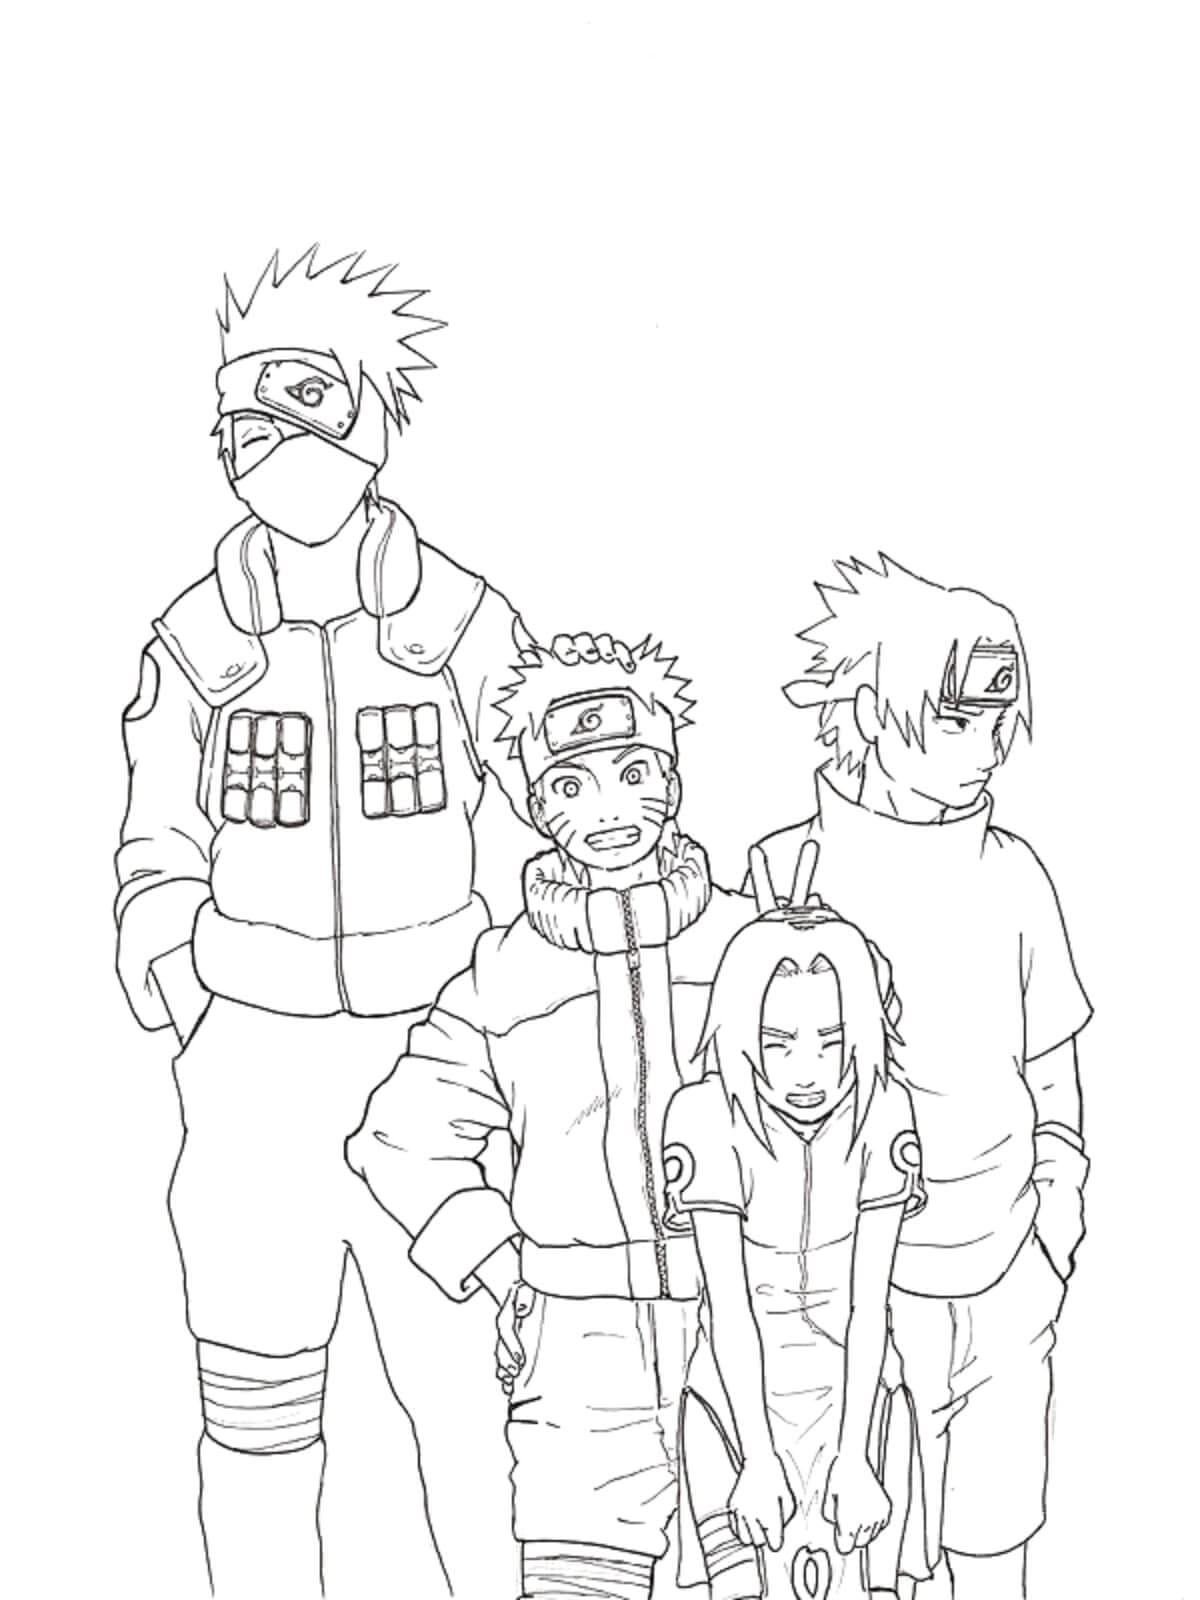 Naruto a Přátelé s Učitelem omalovánka